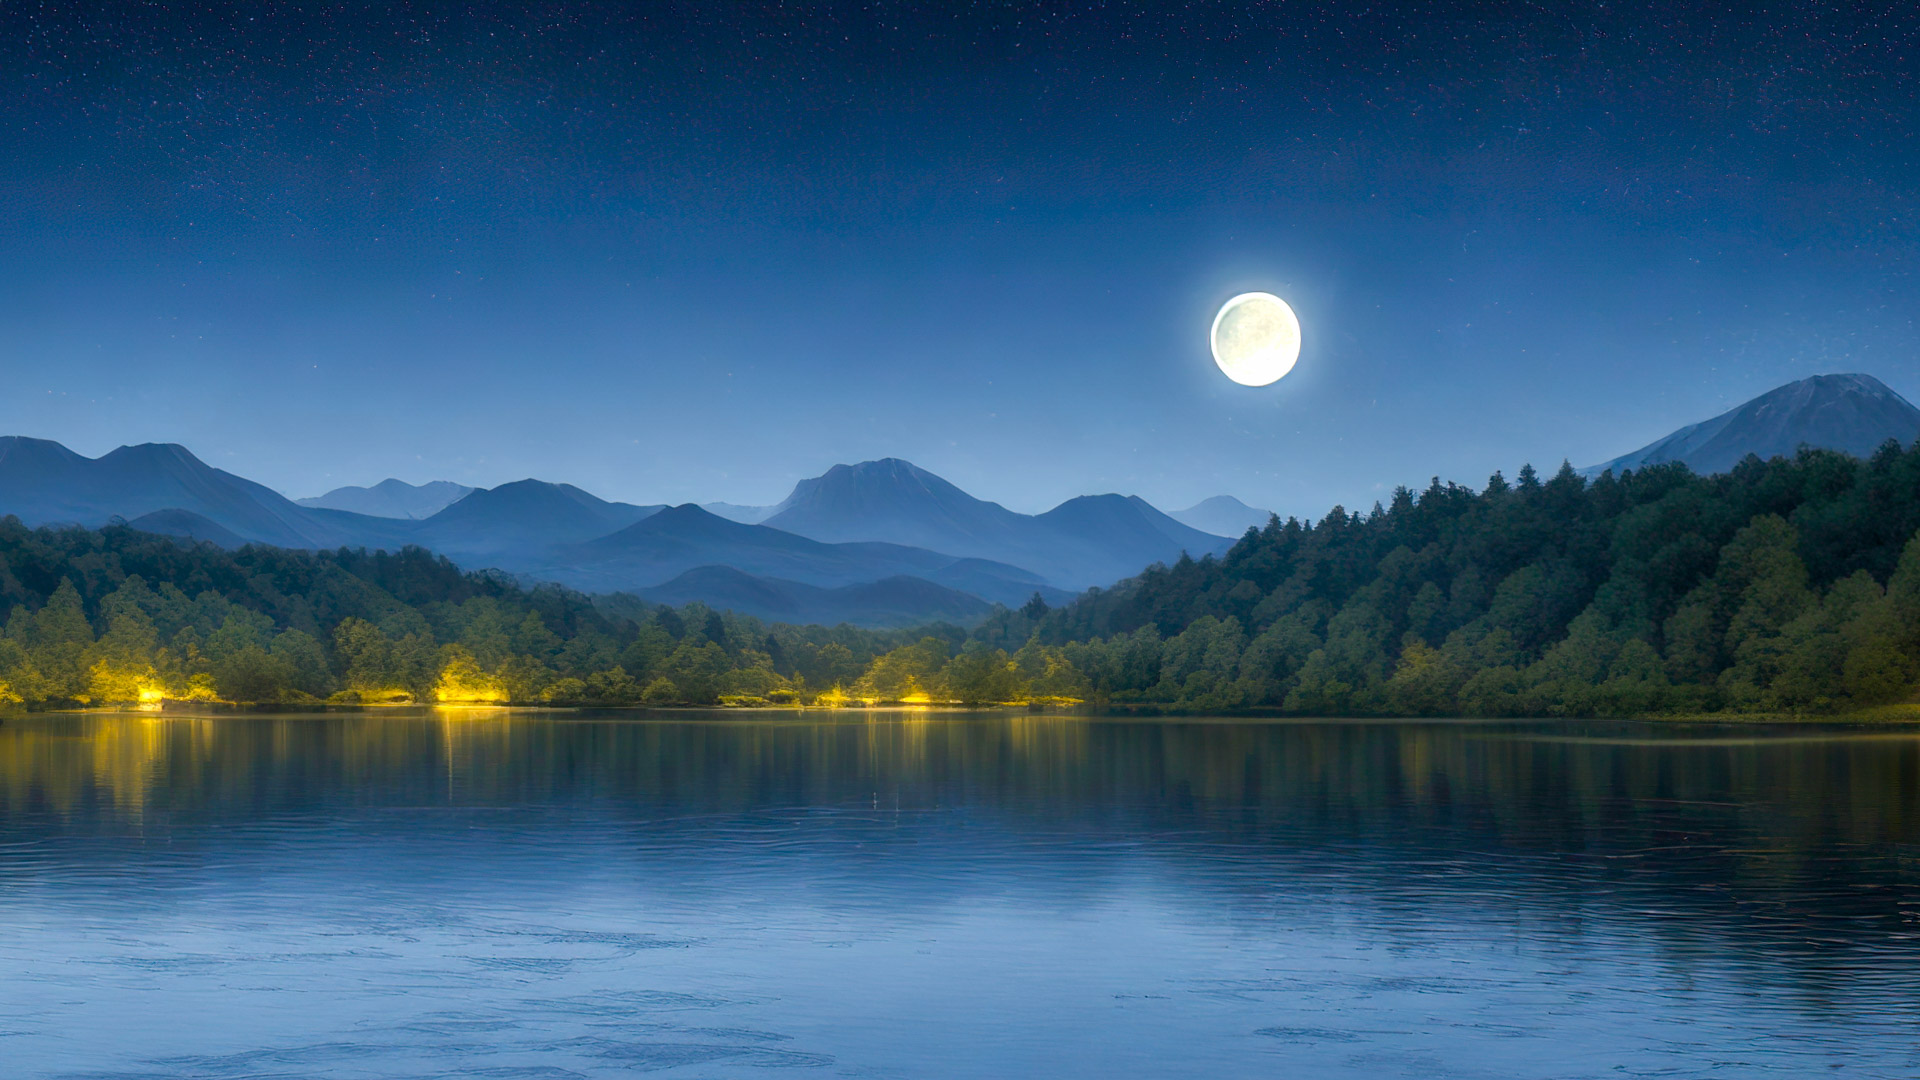 Transformez l'écran de votre PC avec notre fond d'écran de nature en HD intégrale, 1080p, présentant une scène paisible au bord d'un lac sous un ciel étoilé, avec une pleine lune se reflétant à la surface de l'eau.